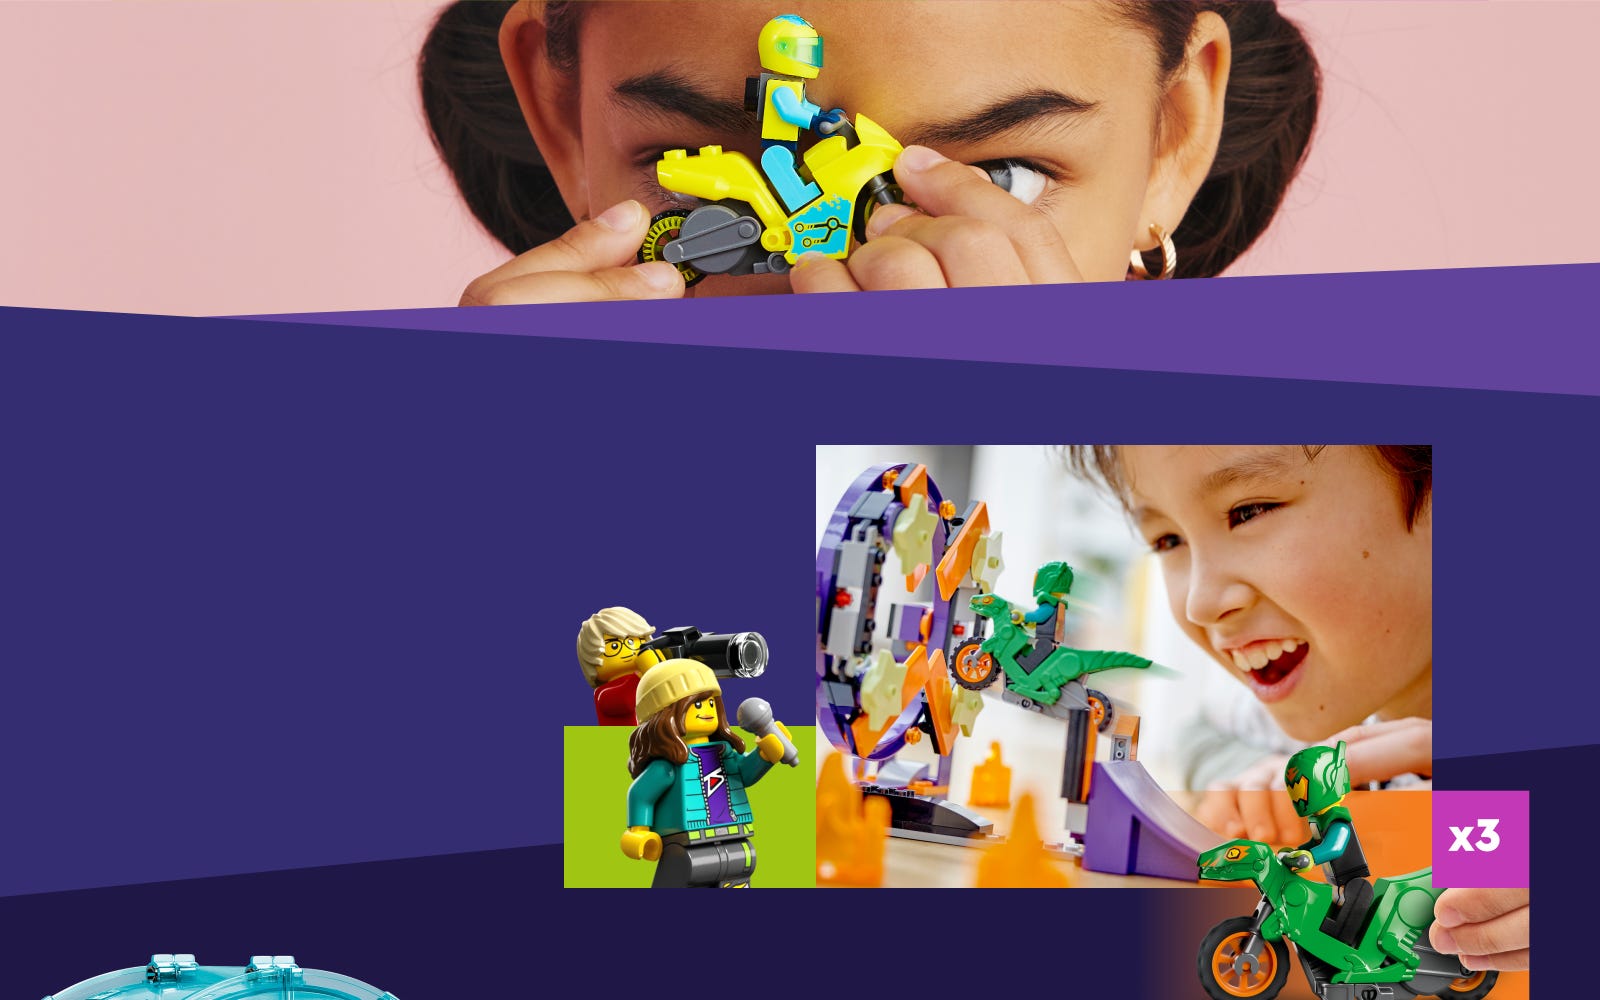 Lego City Stuntz Set Stunt-Park 60293 + Power-Stuntbike 60297 Kit d'action  pour enfants à partir de 5 ans